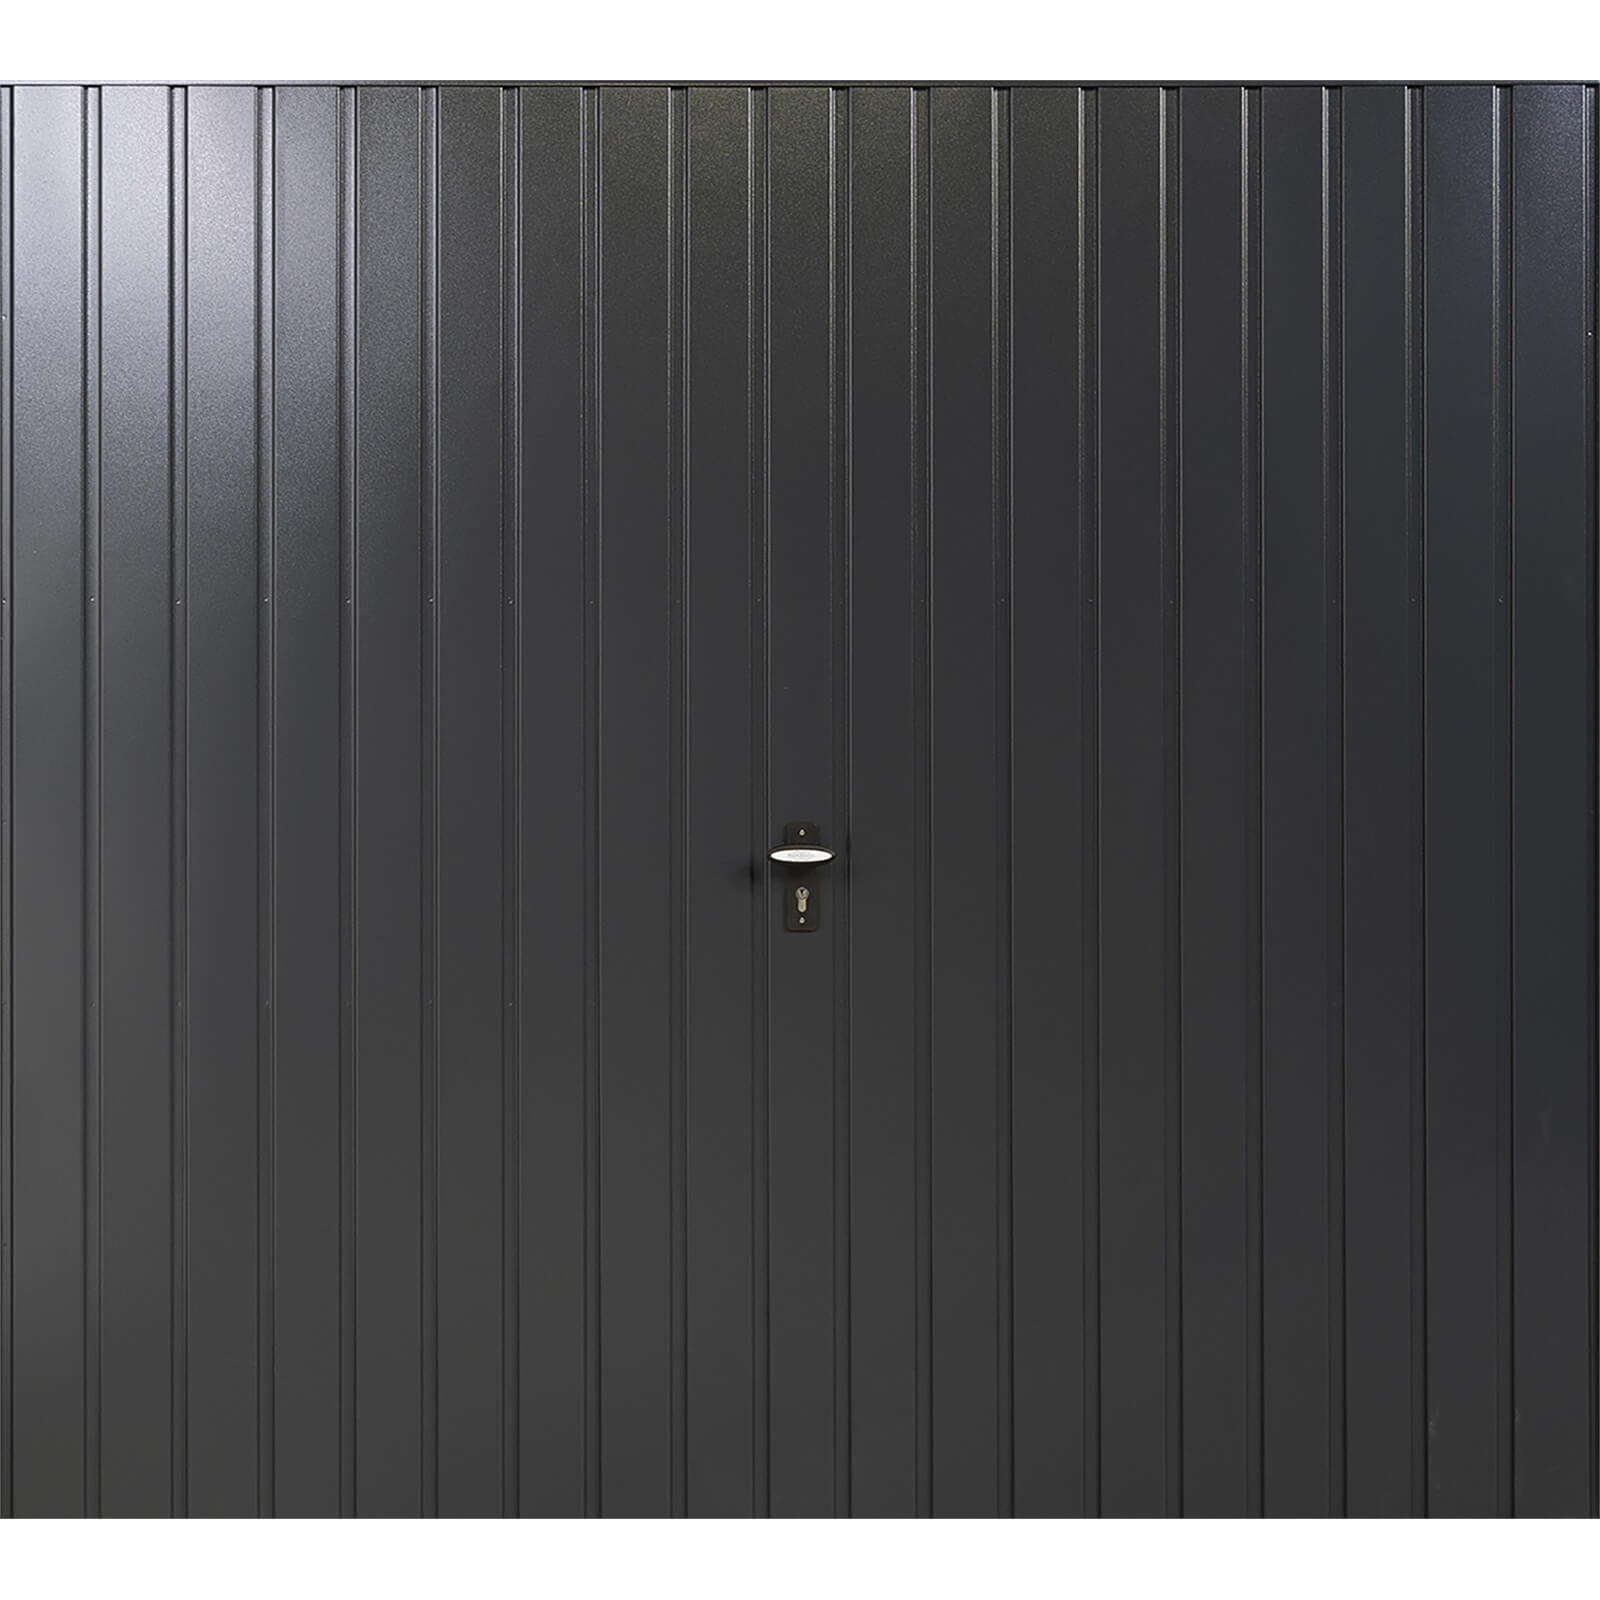 Vertical 7' 6 x 6' 6 Framed Steel Garage Door Anthracite Grey